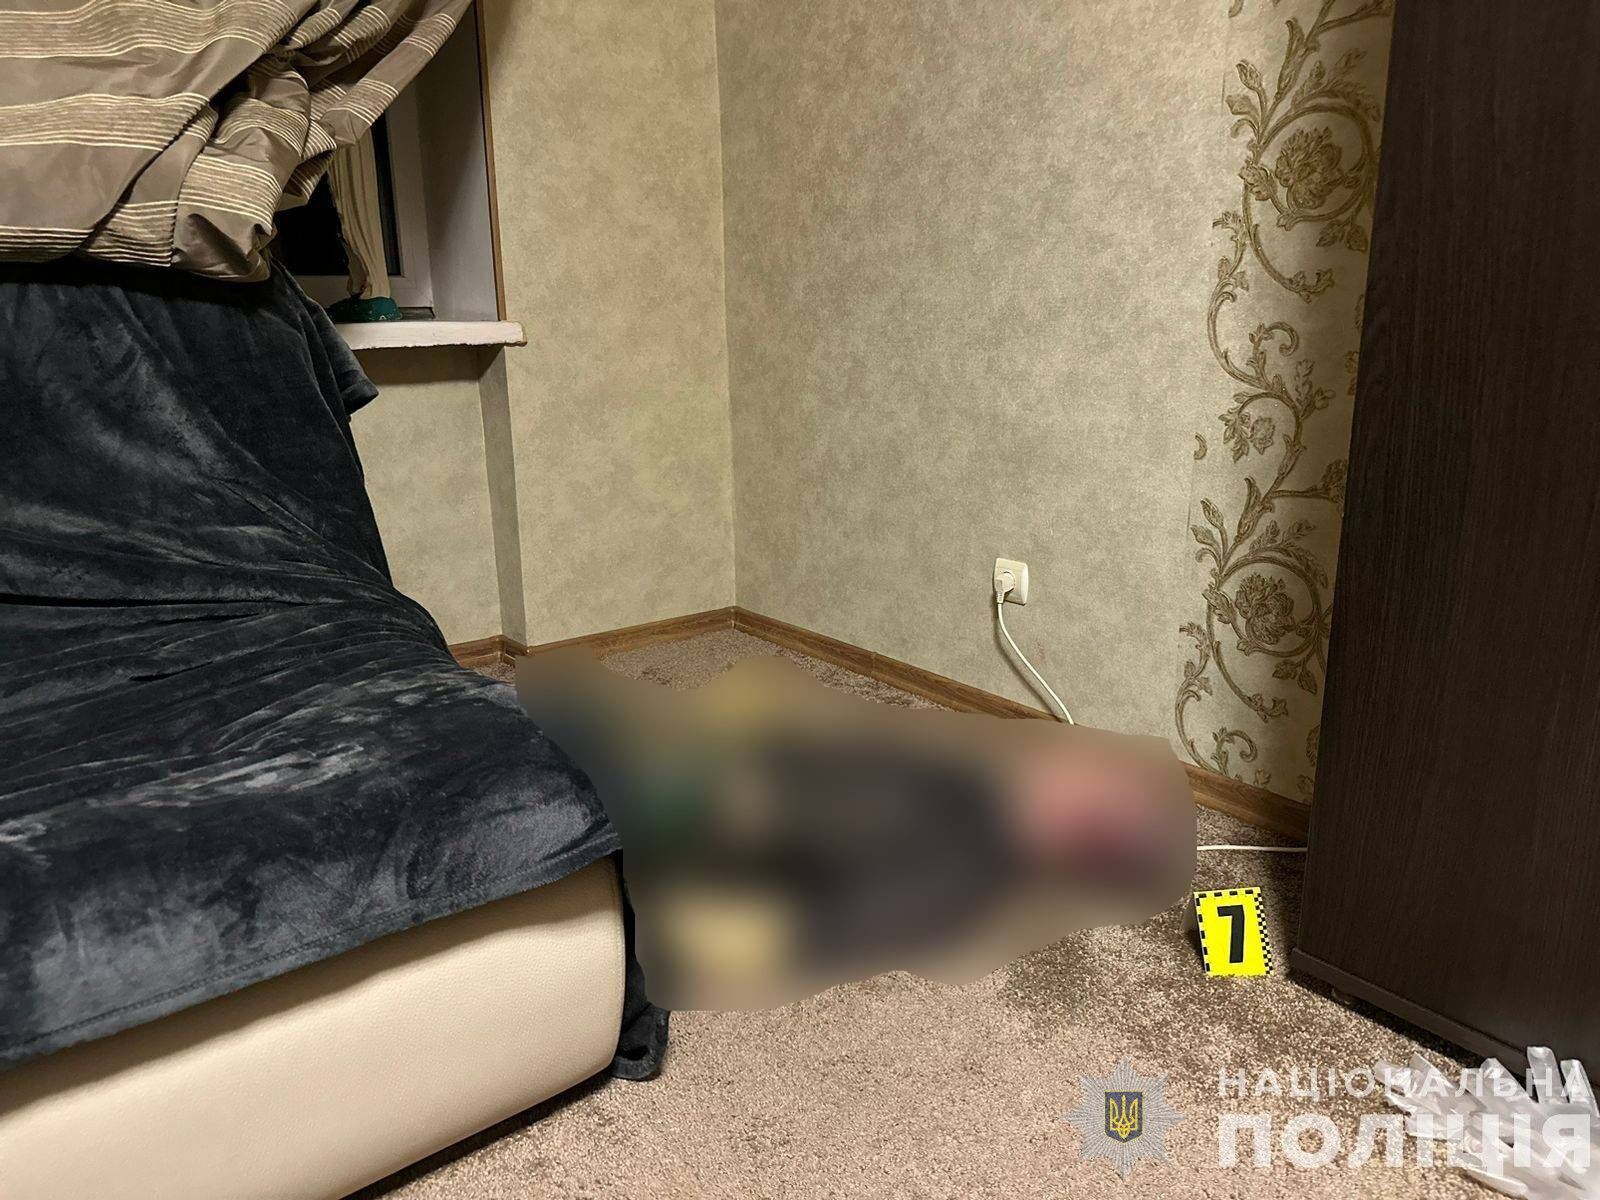 В Ужгороде мужчина задушил жительницу Киевщины: убийству предшествовала стрельба. Подробности и фото